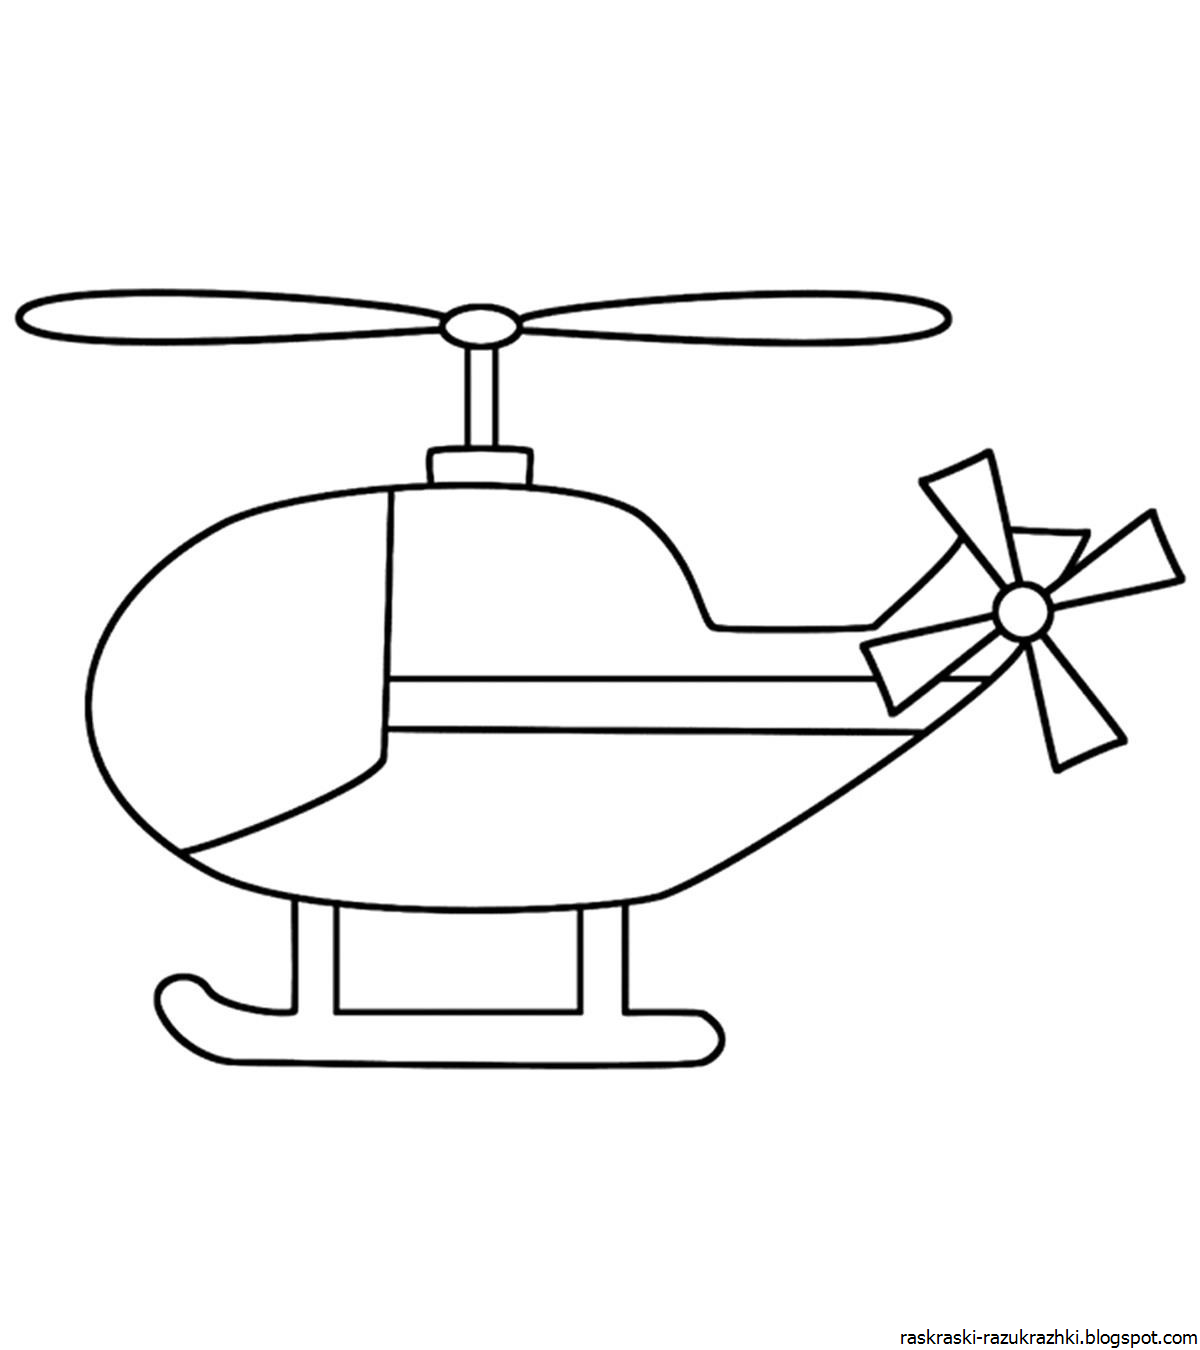 Раскраски Вертолеты Более 30 видов вертолетов для раскрашивания разной сложности и для разного возраста Подборки для 3-4 и 5-10 лет